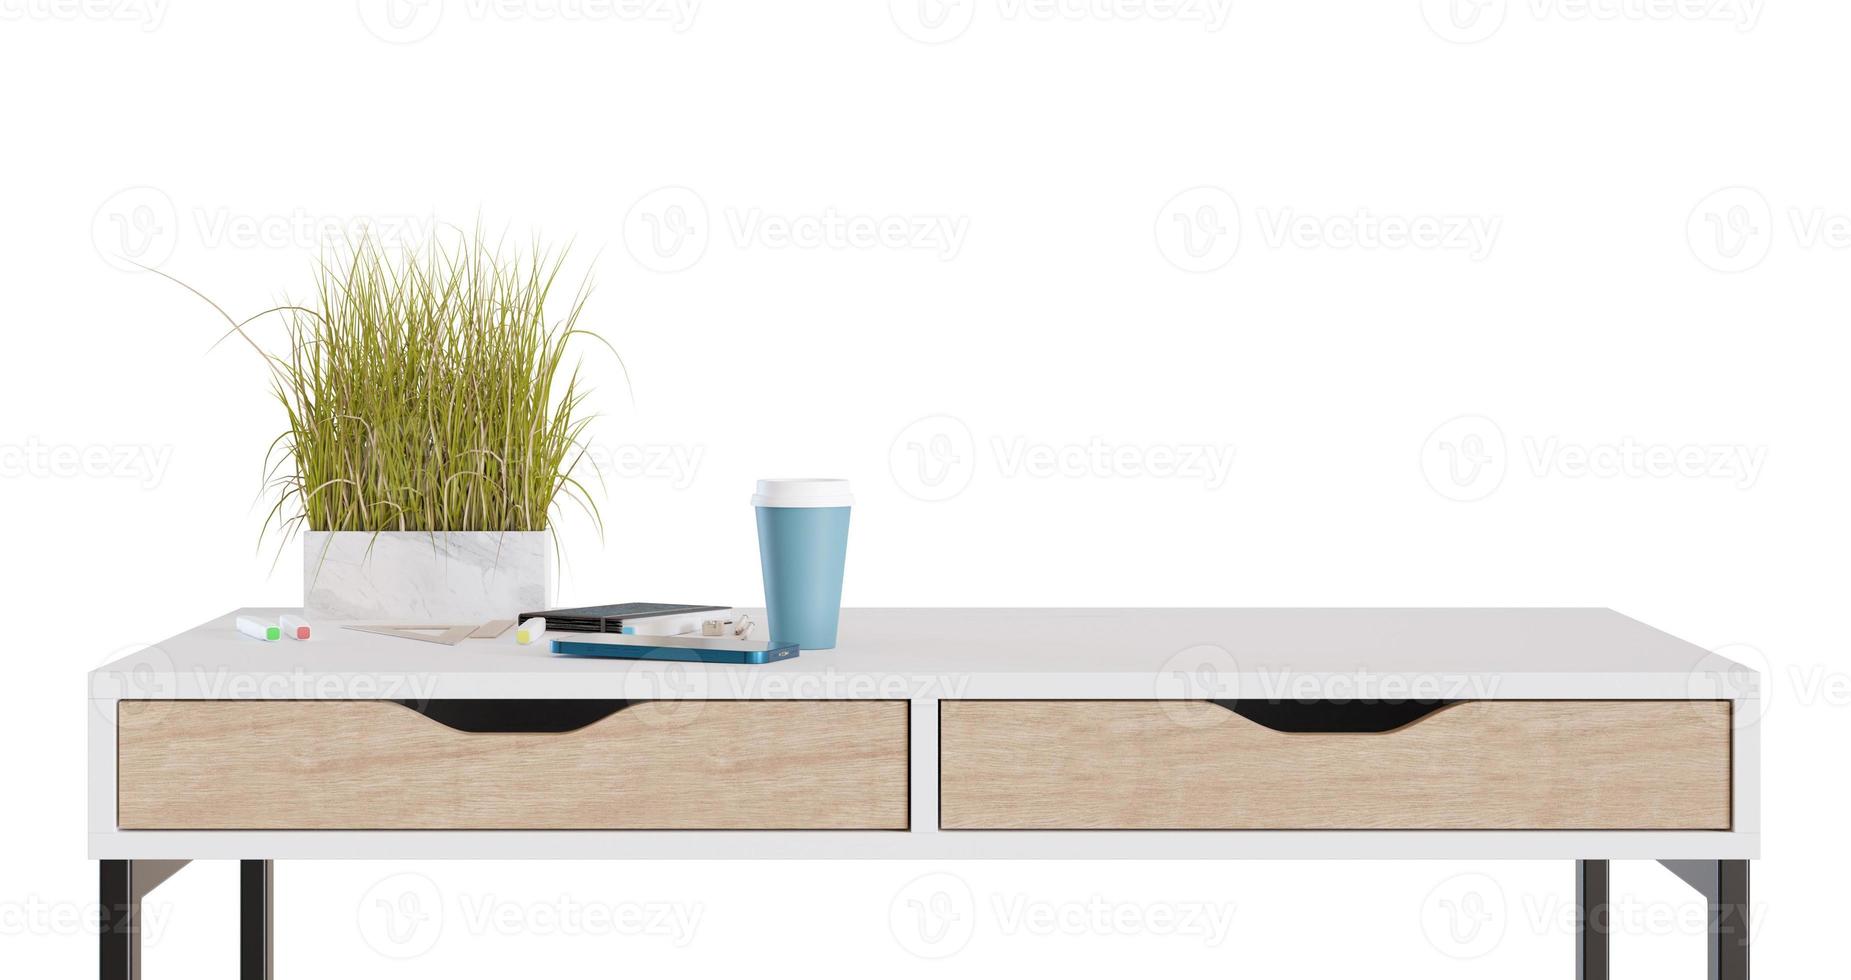 mesa de madera con accesorios para el hogar o la oficina aislados en fondo blanco. vista frontal. cortar muebles. escritorio moderno. elemento de diseño de interiores. copie el espacio para el objeto, la presentación del producto. procesamiento 3d foto